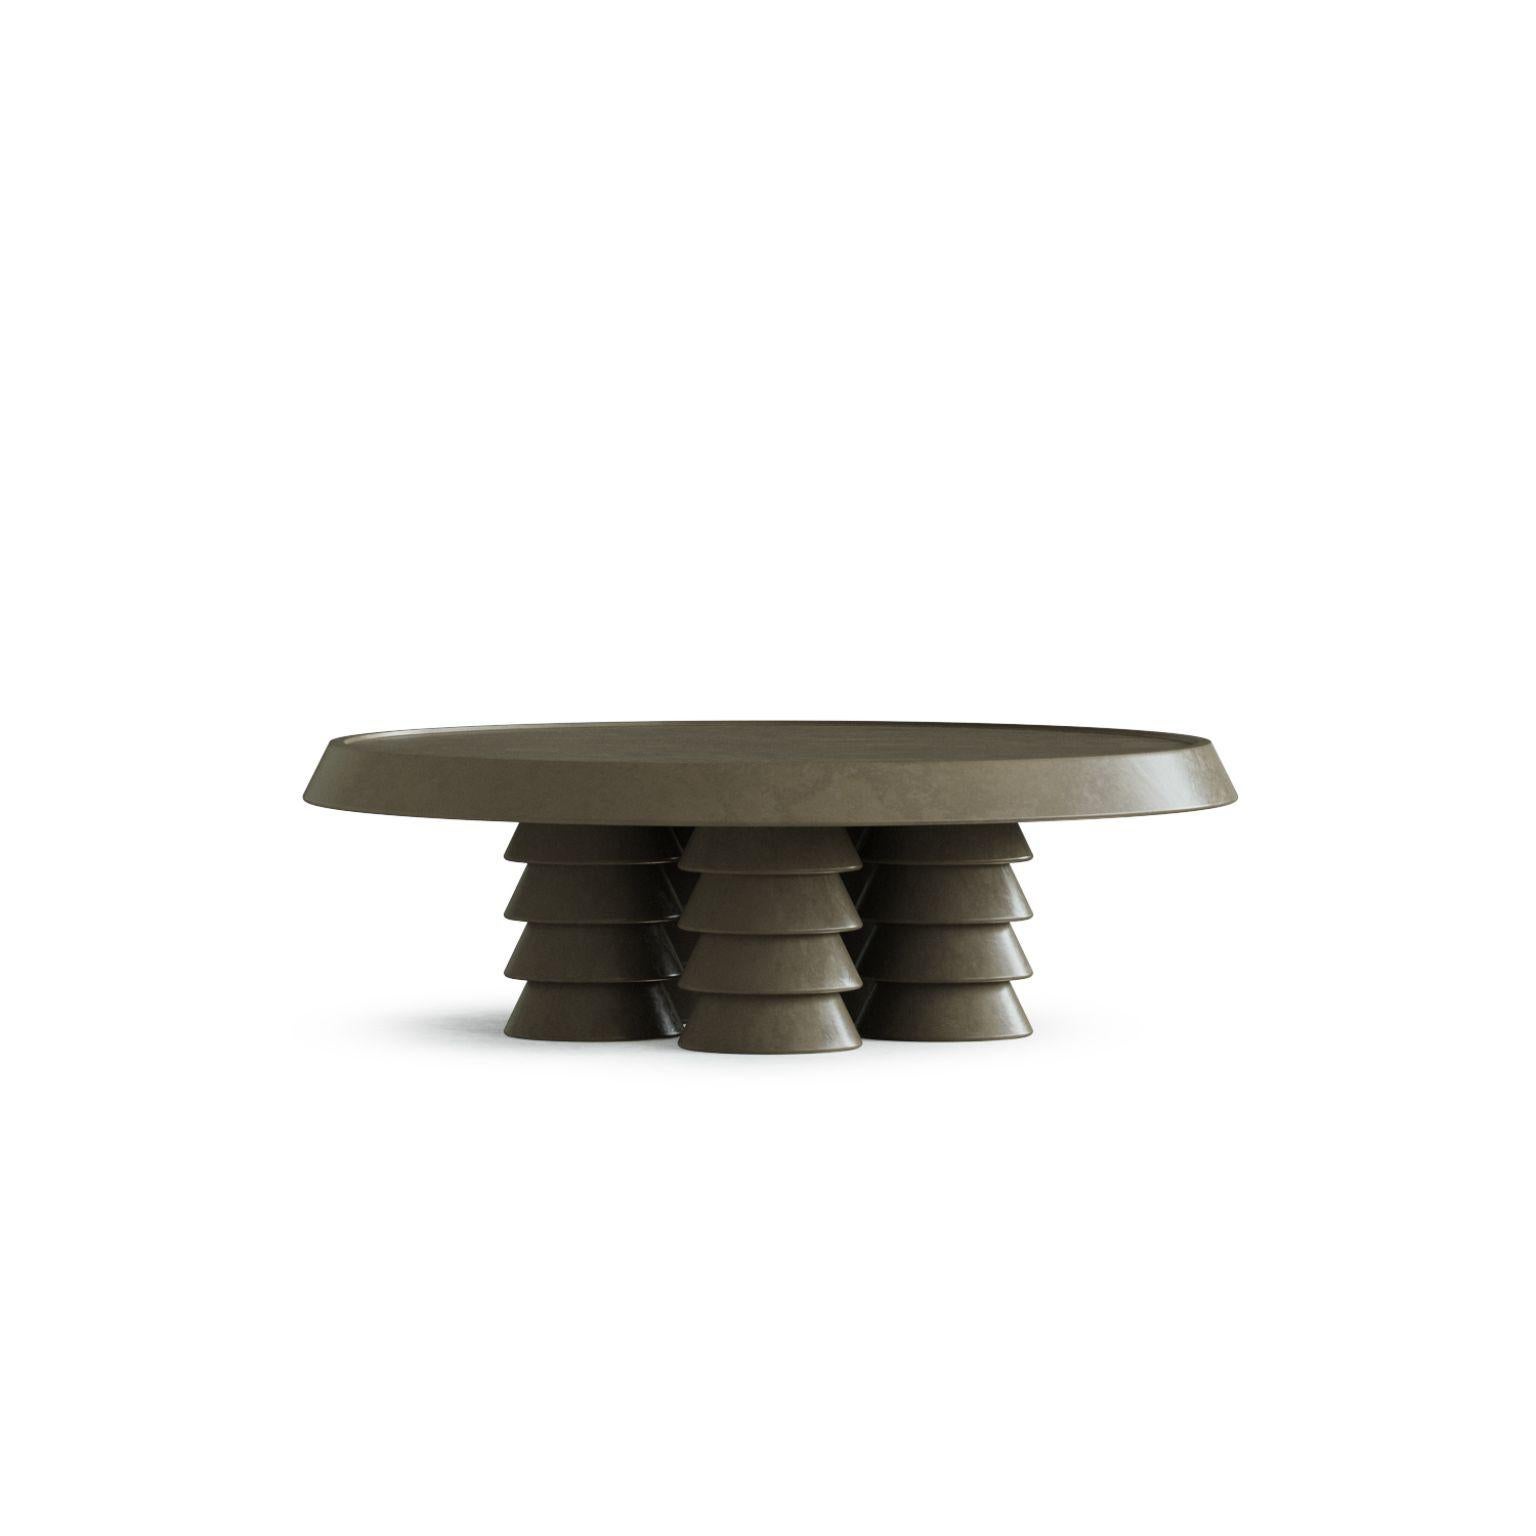 Table basse Trigono gris foncé par Studio Anansi
Dimensions : D122 x L122 x H38 cm
MATERIAL : pierre calcaire
Pierres personnalisées disponibles. Veuillez nous contacter.

Studio ANANSI, fondé par Evan Jerry en 2018, représente une réection sur la